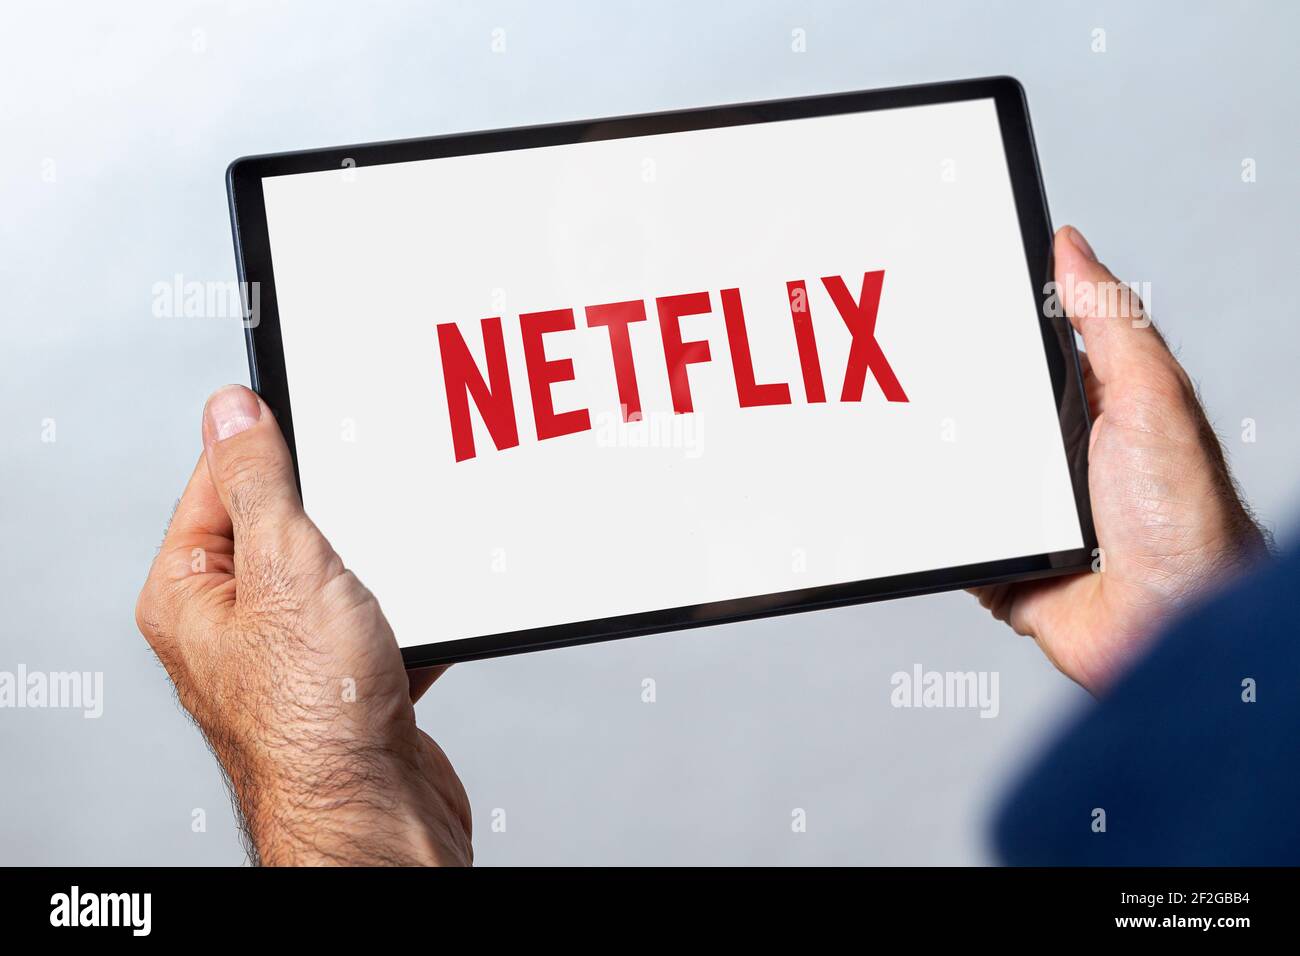 ROSARIO, ARGENTINE - 11 MARS 2021: Homme tenant une tablette avec le logo du service de streaming vidéo netflix à l'écran. Banque D'Images